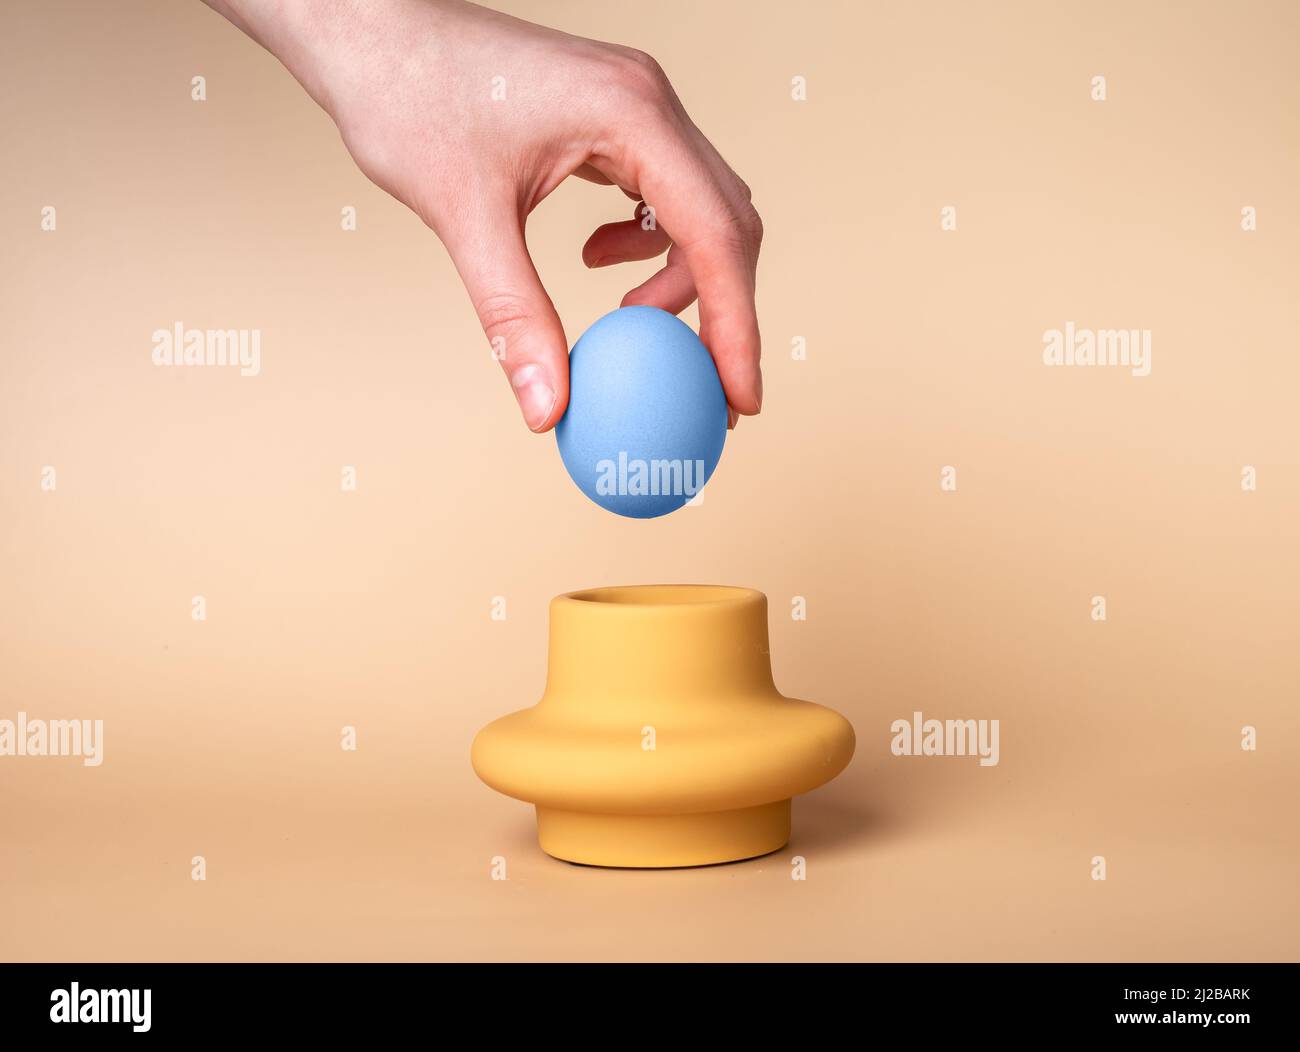 Faire passer à la main l'œuf bleu teint dans la tasse. Support et serveur sur fond beige. Concept de tradition de célébration de Pâques. Photo de haute qualité Banque D'Images